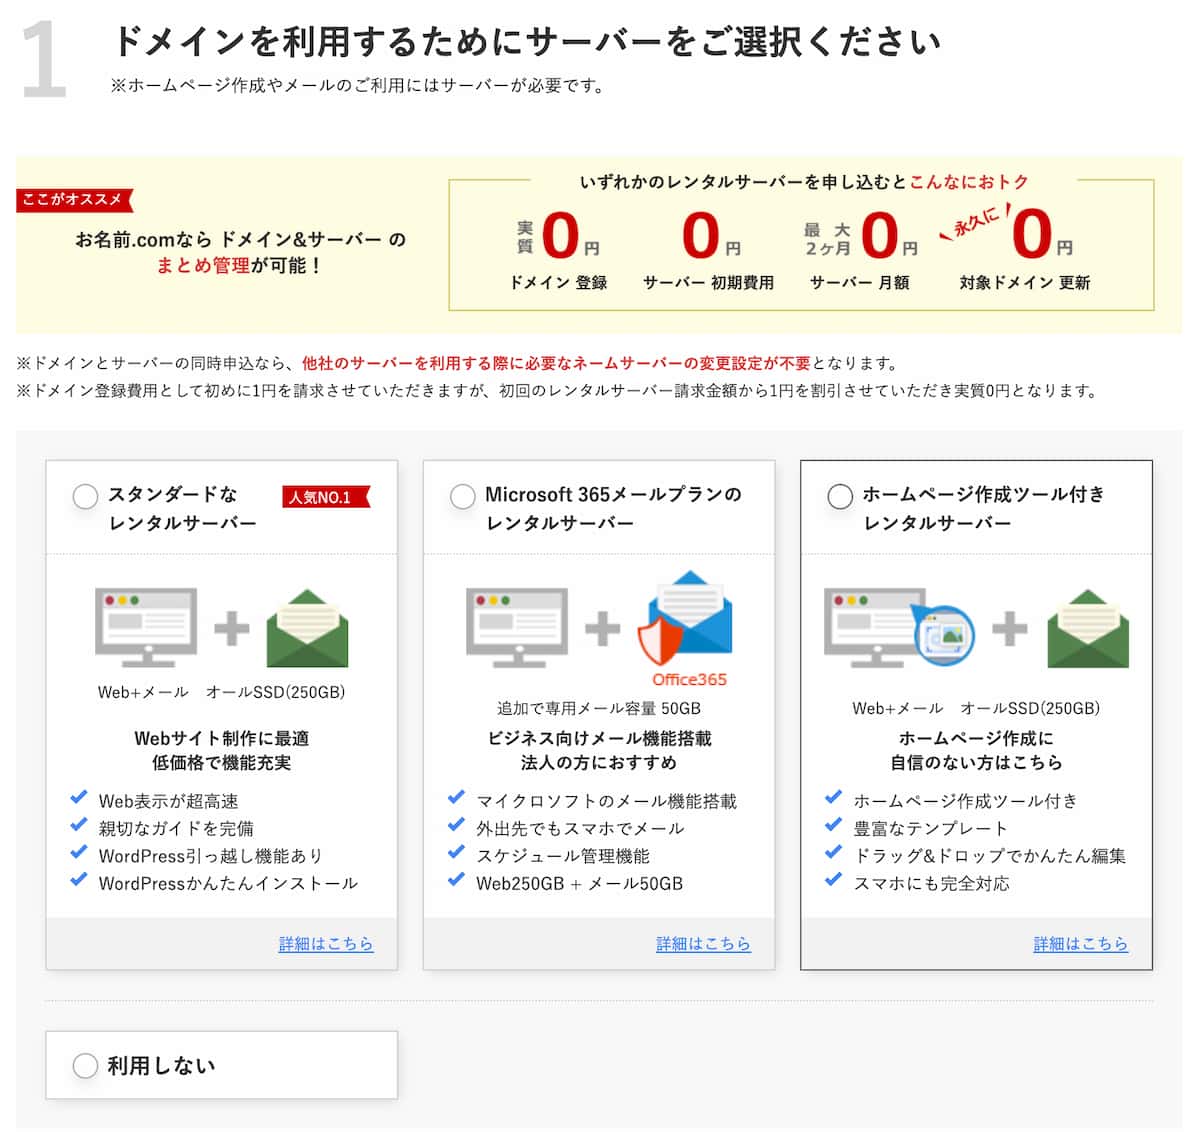 お名前ドットコムのドメイン取得とレンタルサーバーサービスの選択画面